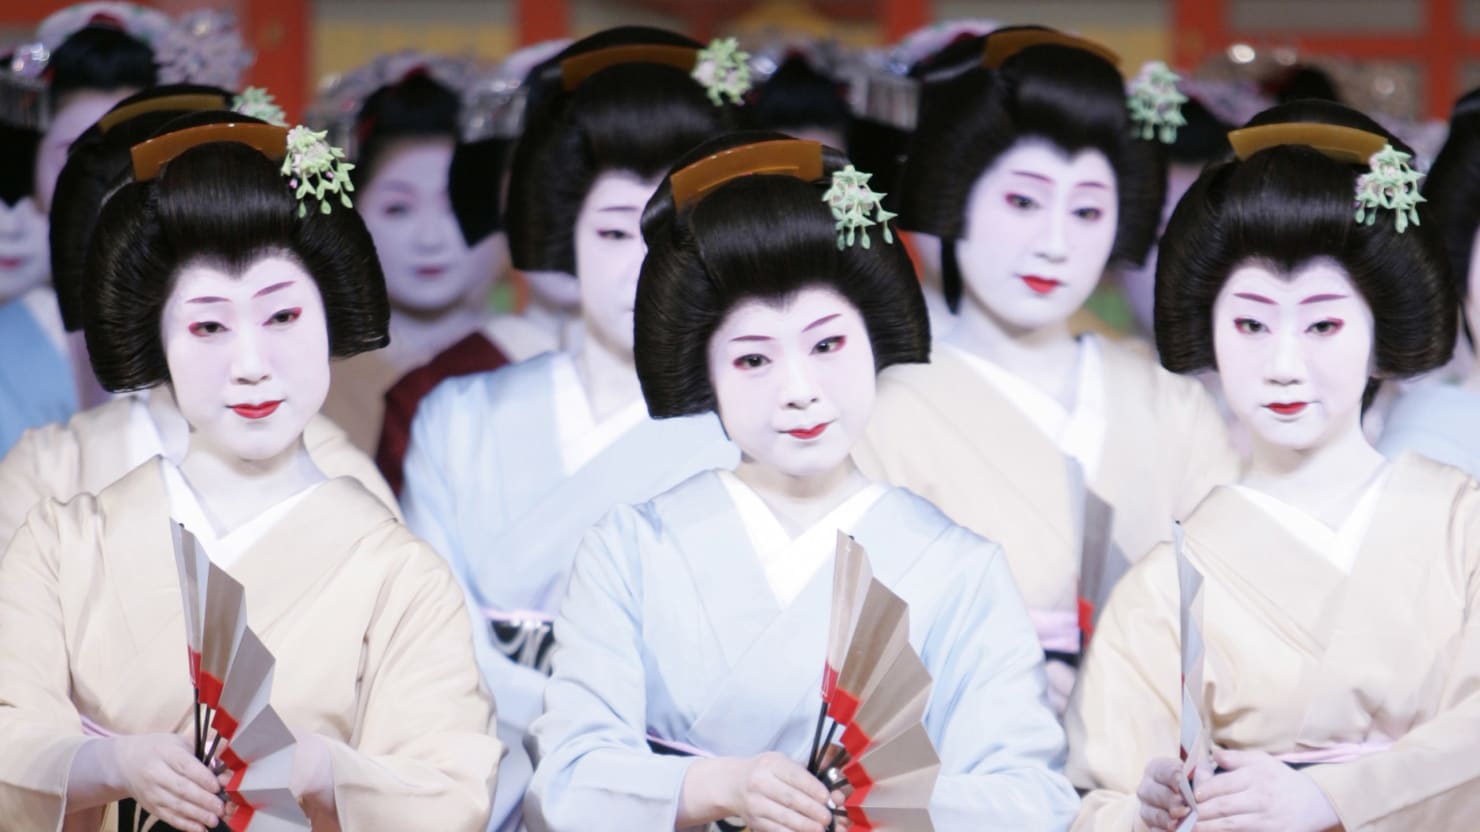 japan geisha married me